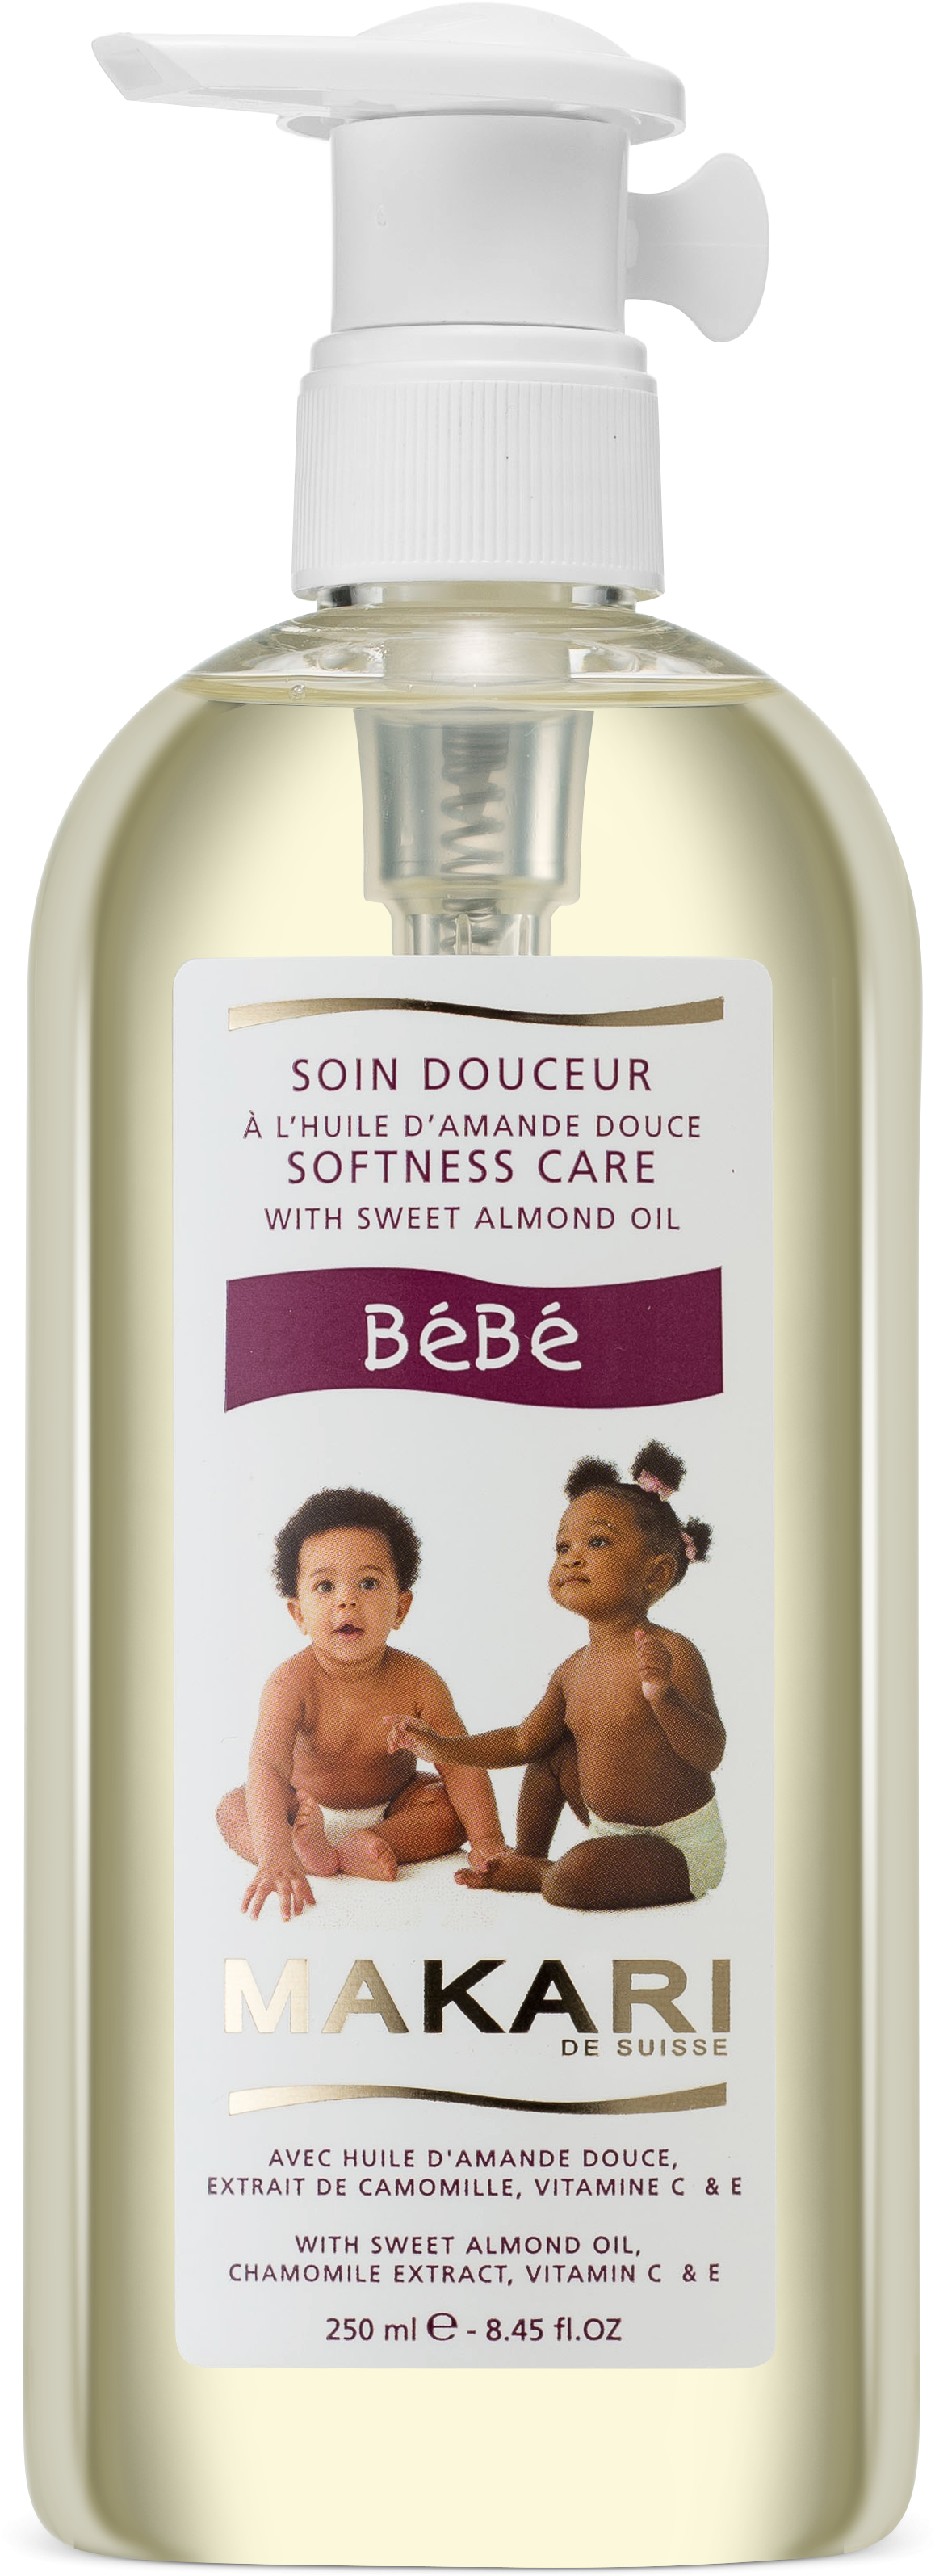 Bebe Oil - Makari Bébé Clipart (2919x3821), Png Download